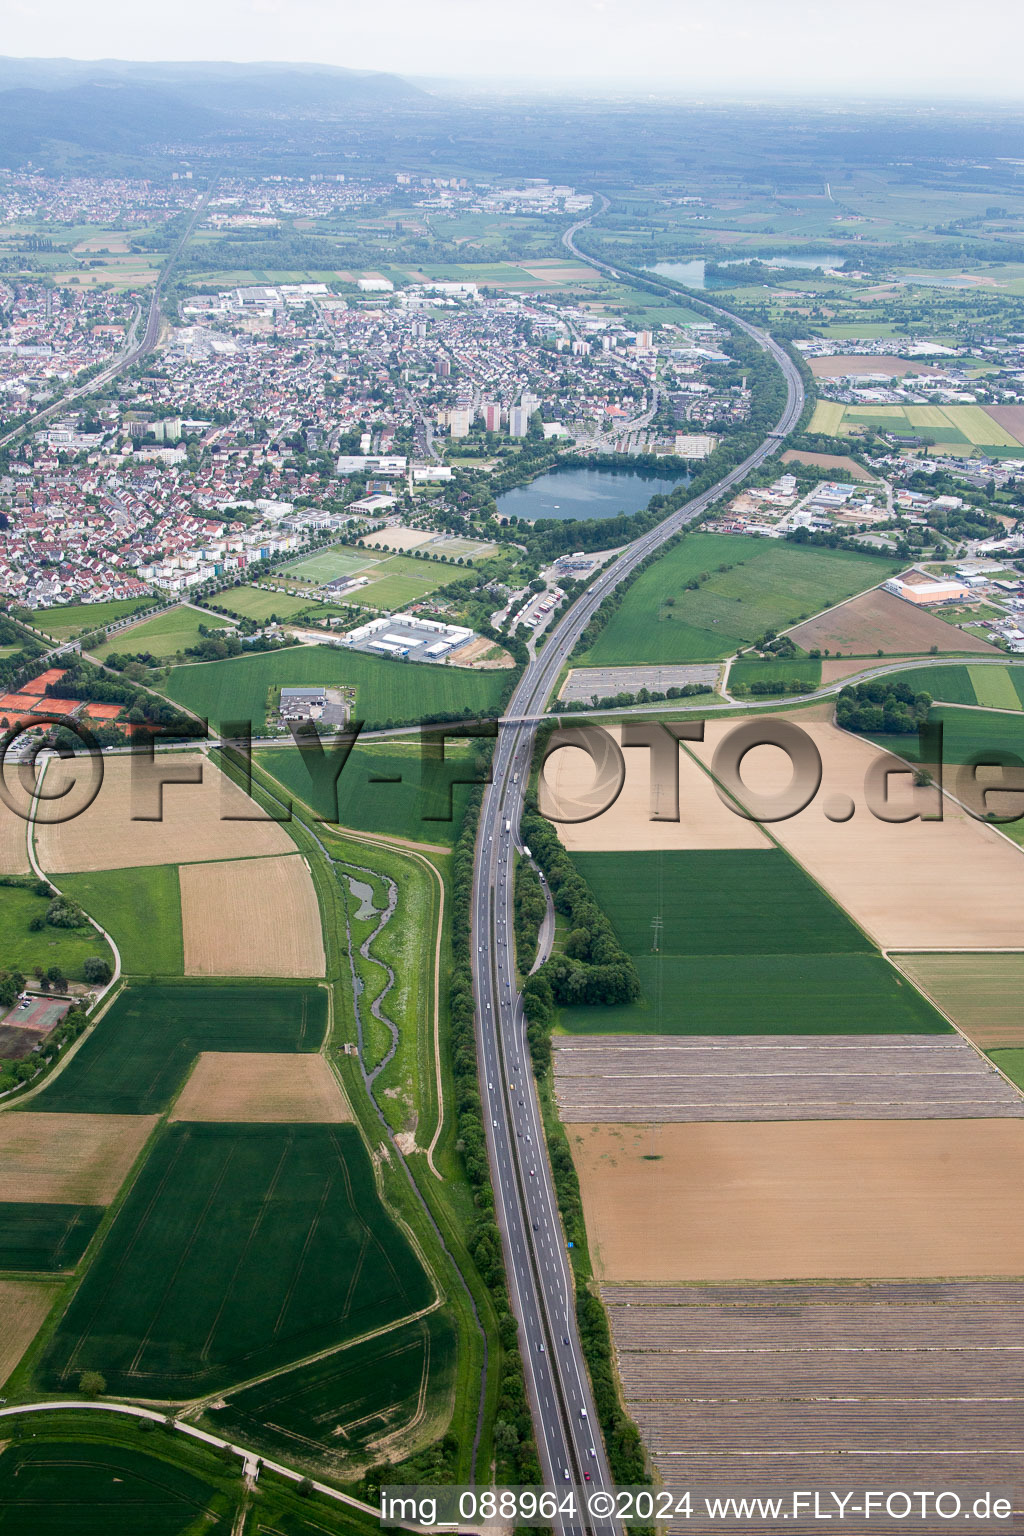 Streckenverlauf A5 im Ortsteil Auerbach in Bensheim im Bundesland Hessen, Deutschland